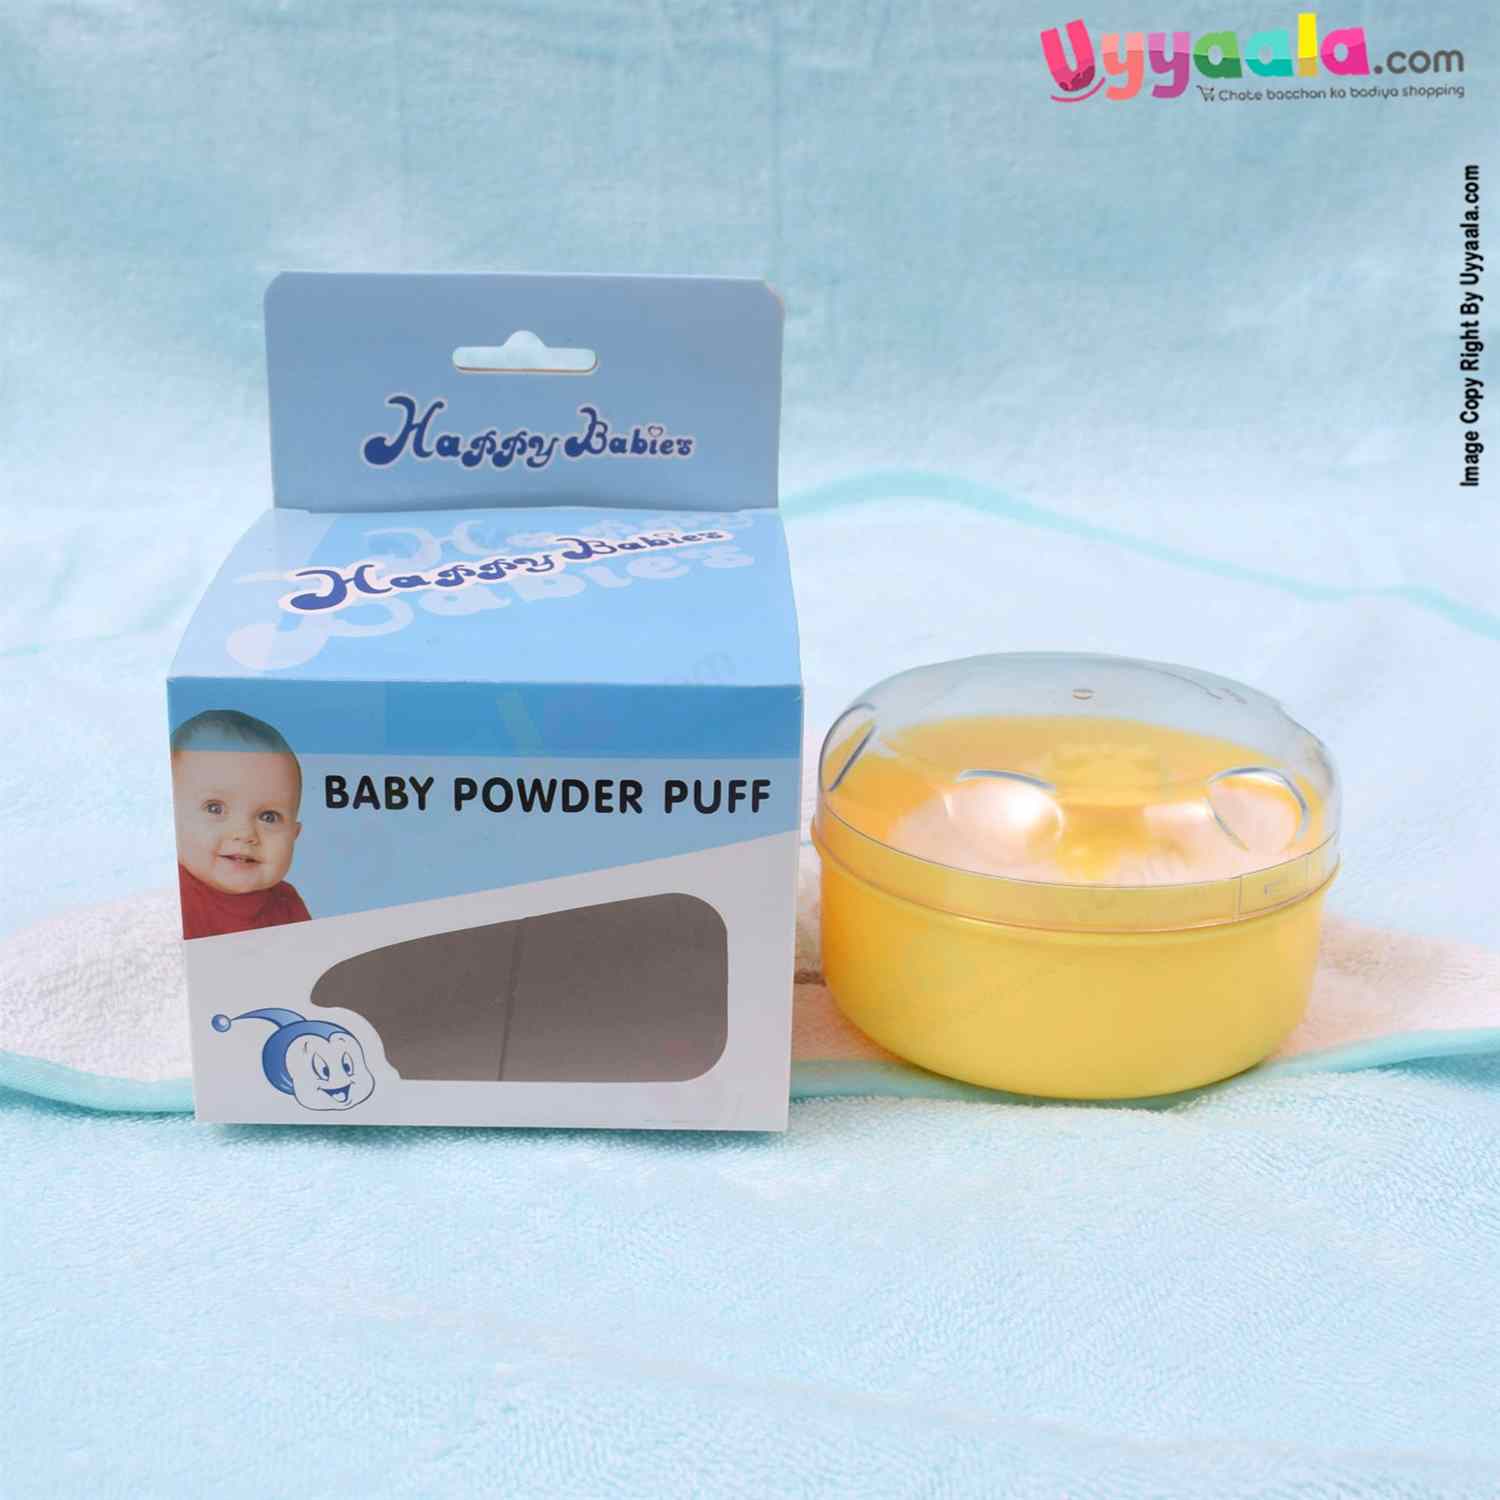 HAPPY BABIES Powder Box with Puff 0-10y Age